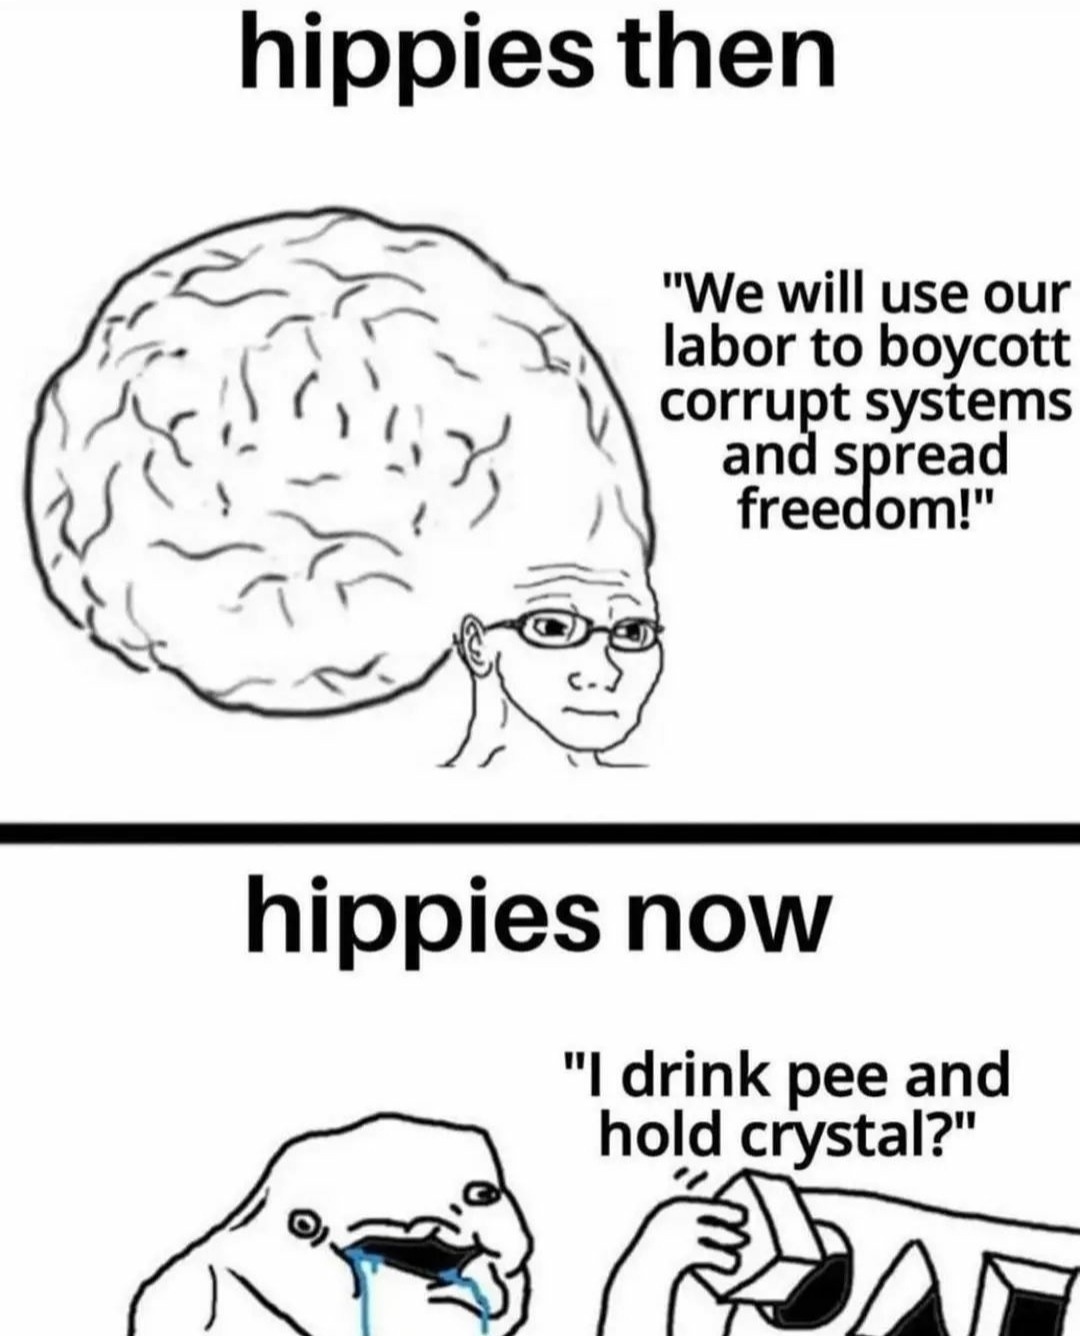 Hiptards - meme